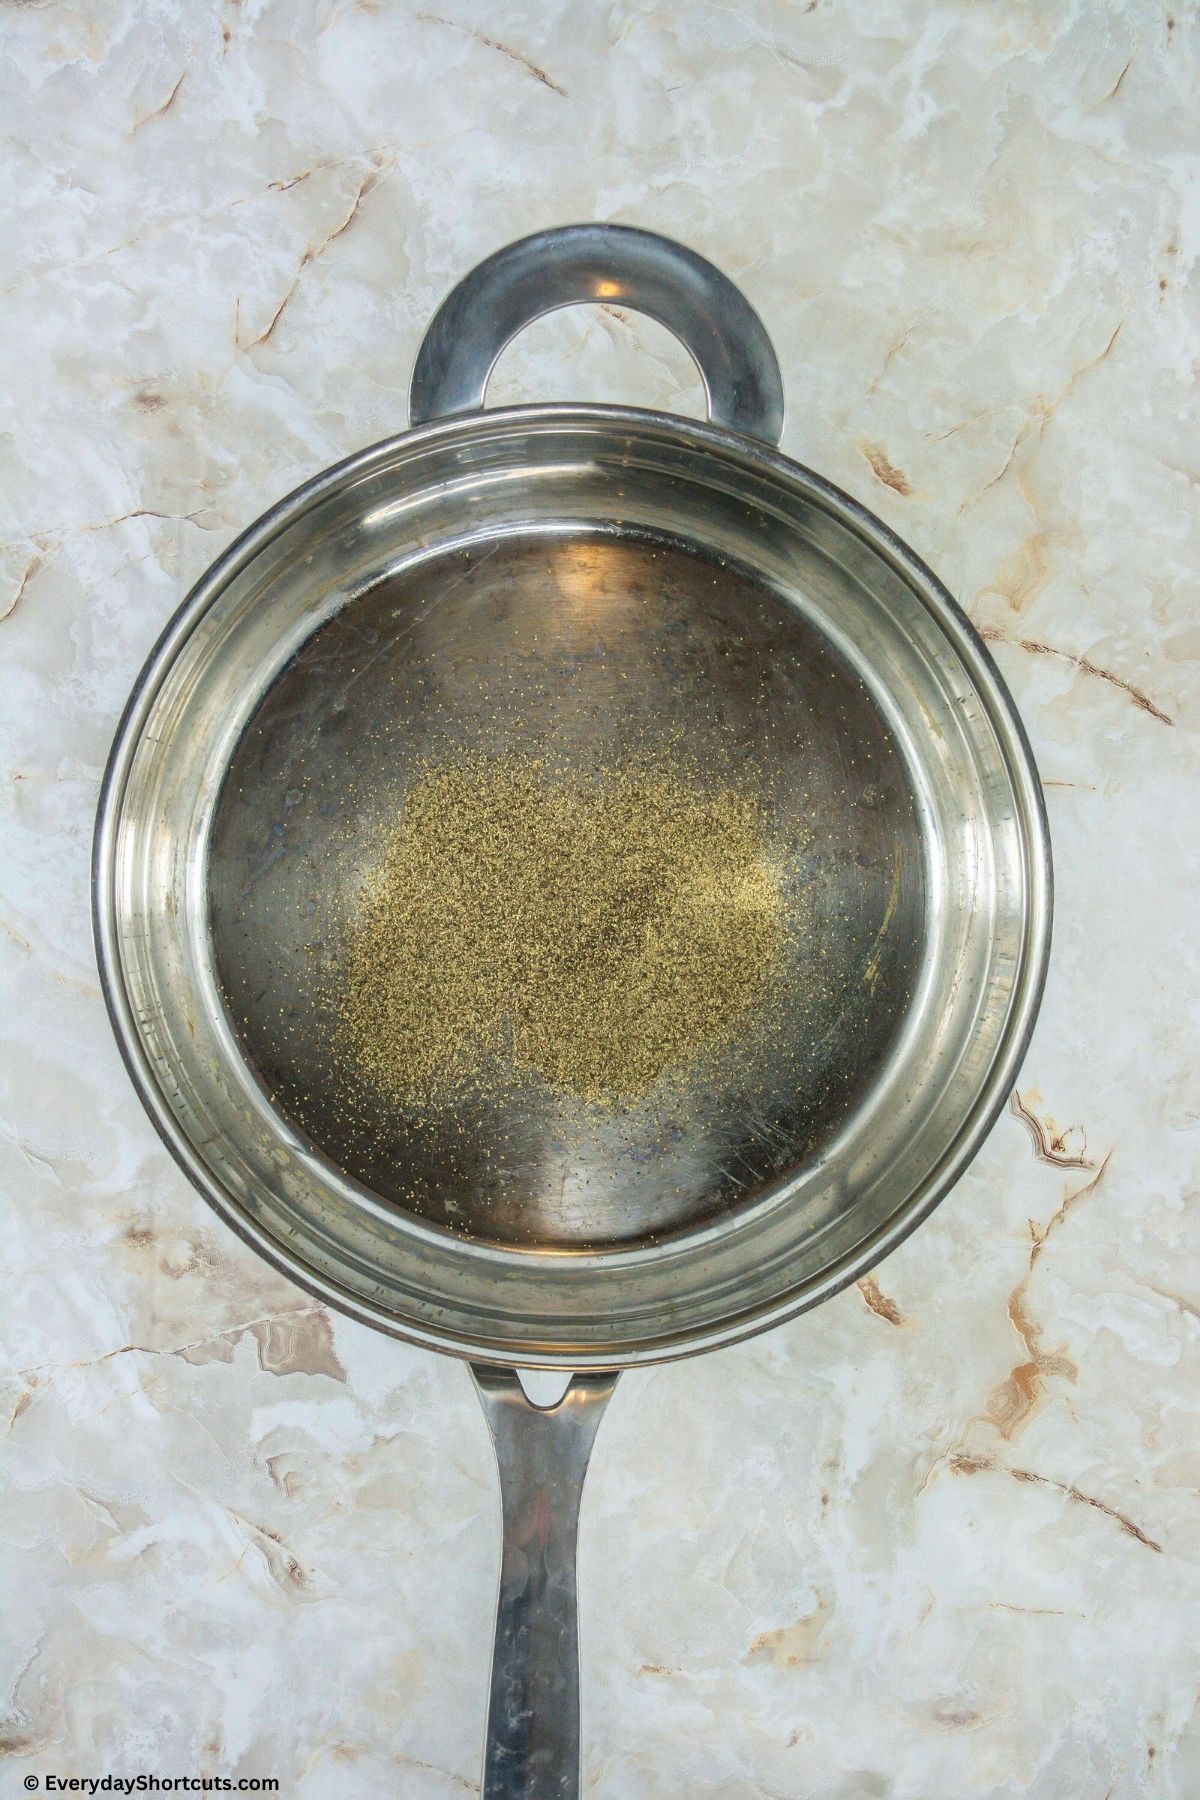 pepper in a pan